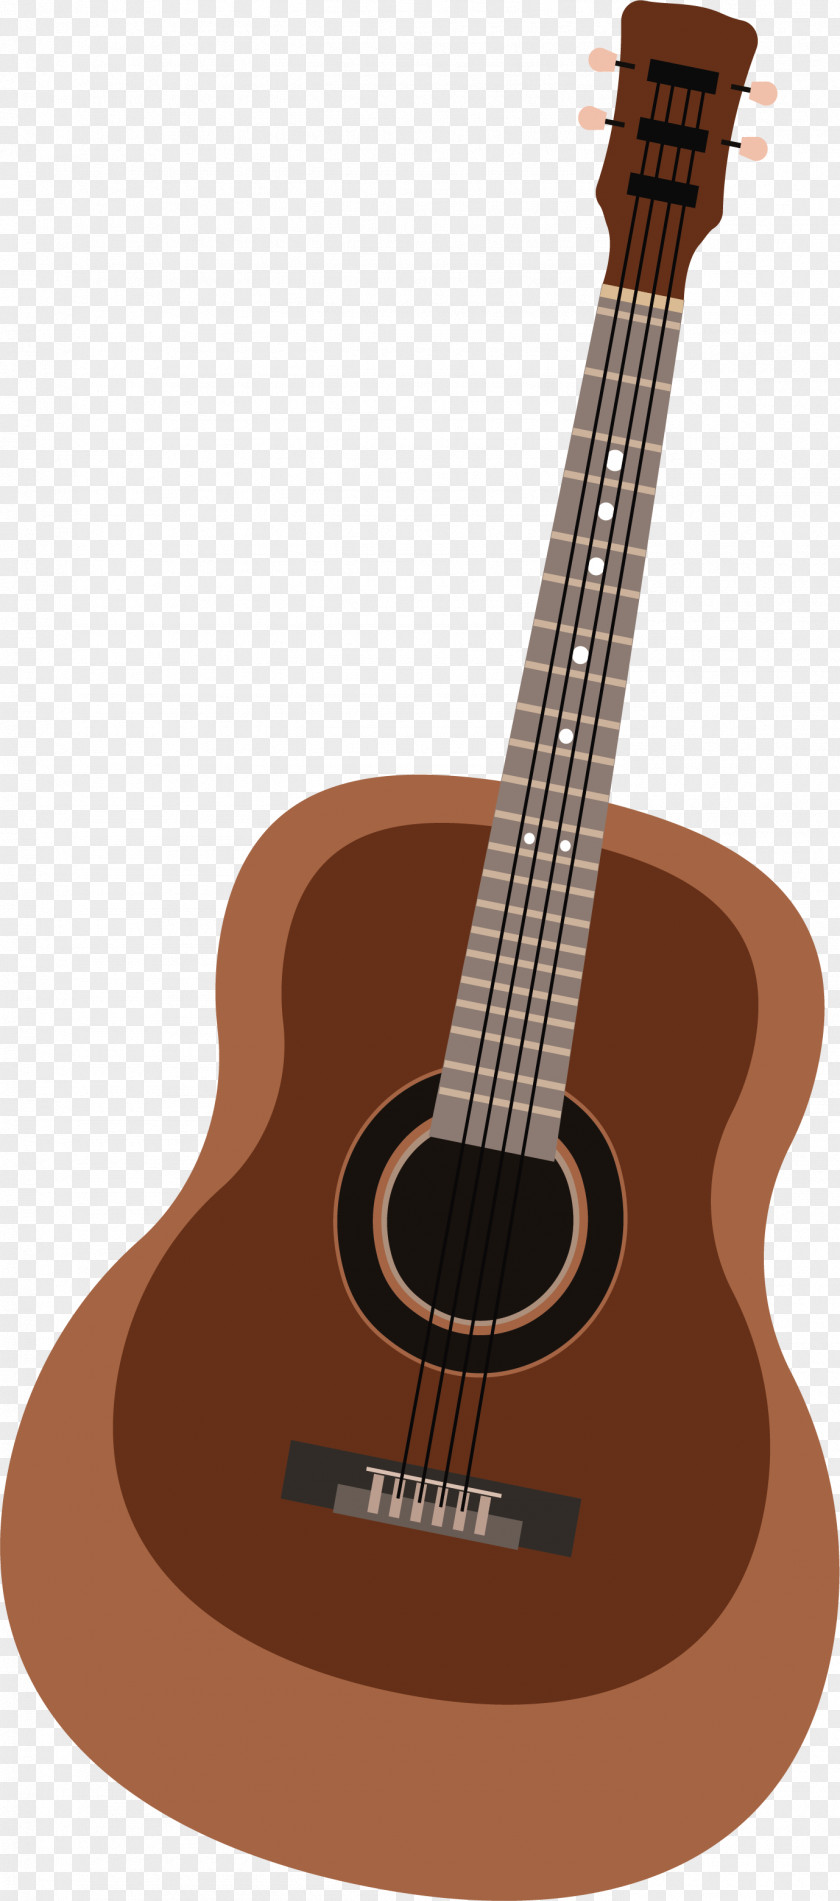 Wooden Guitar Acoustic Ukulele PNG